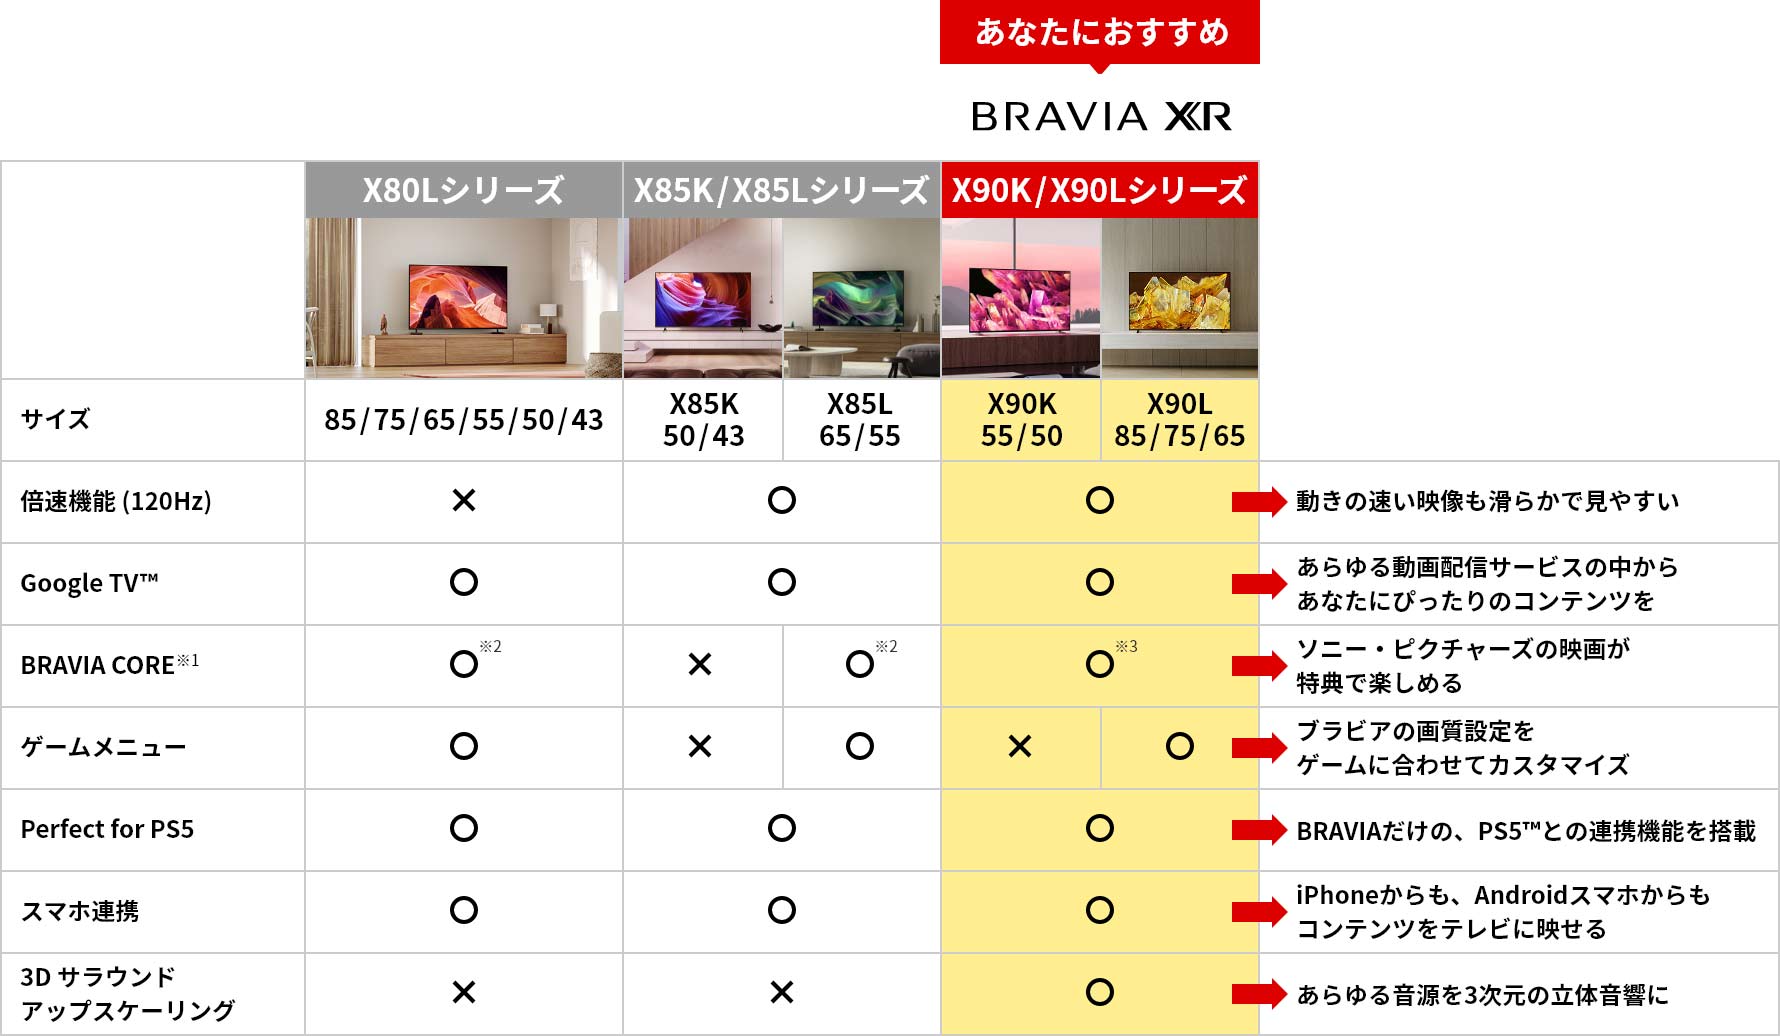 X80Lシリーズ、X85K/X85Lシリーズ、X90K/X90Lシリーズとの比較表